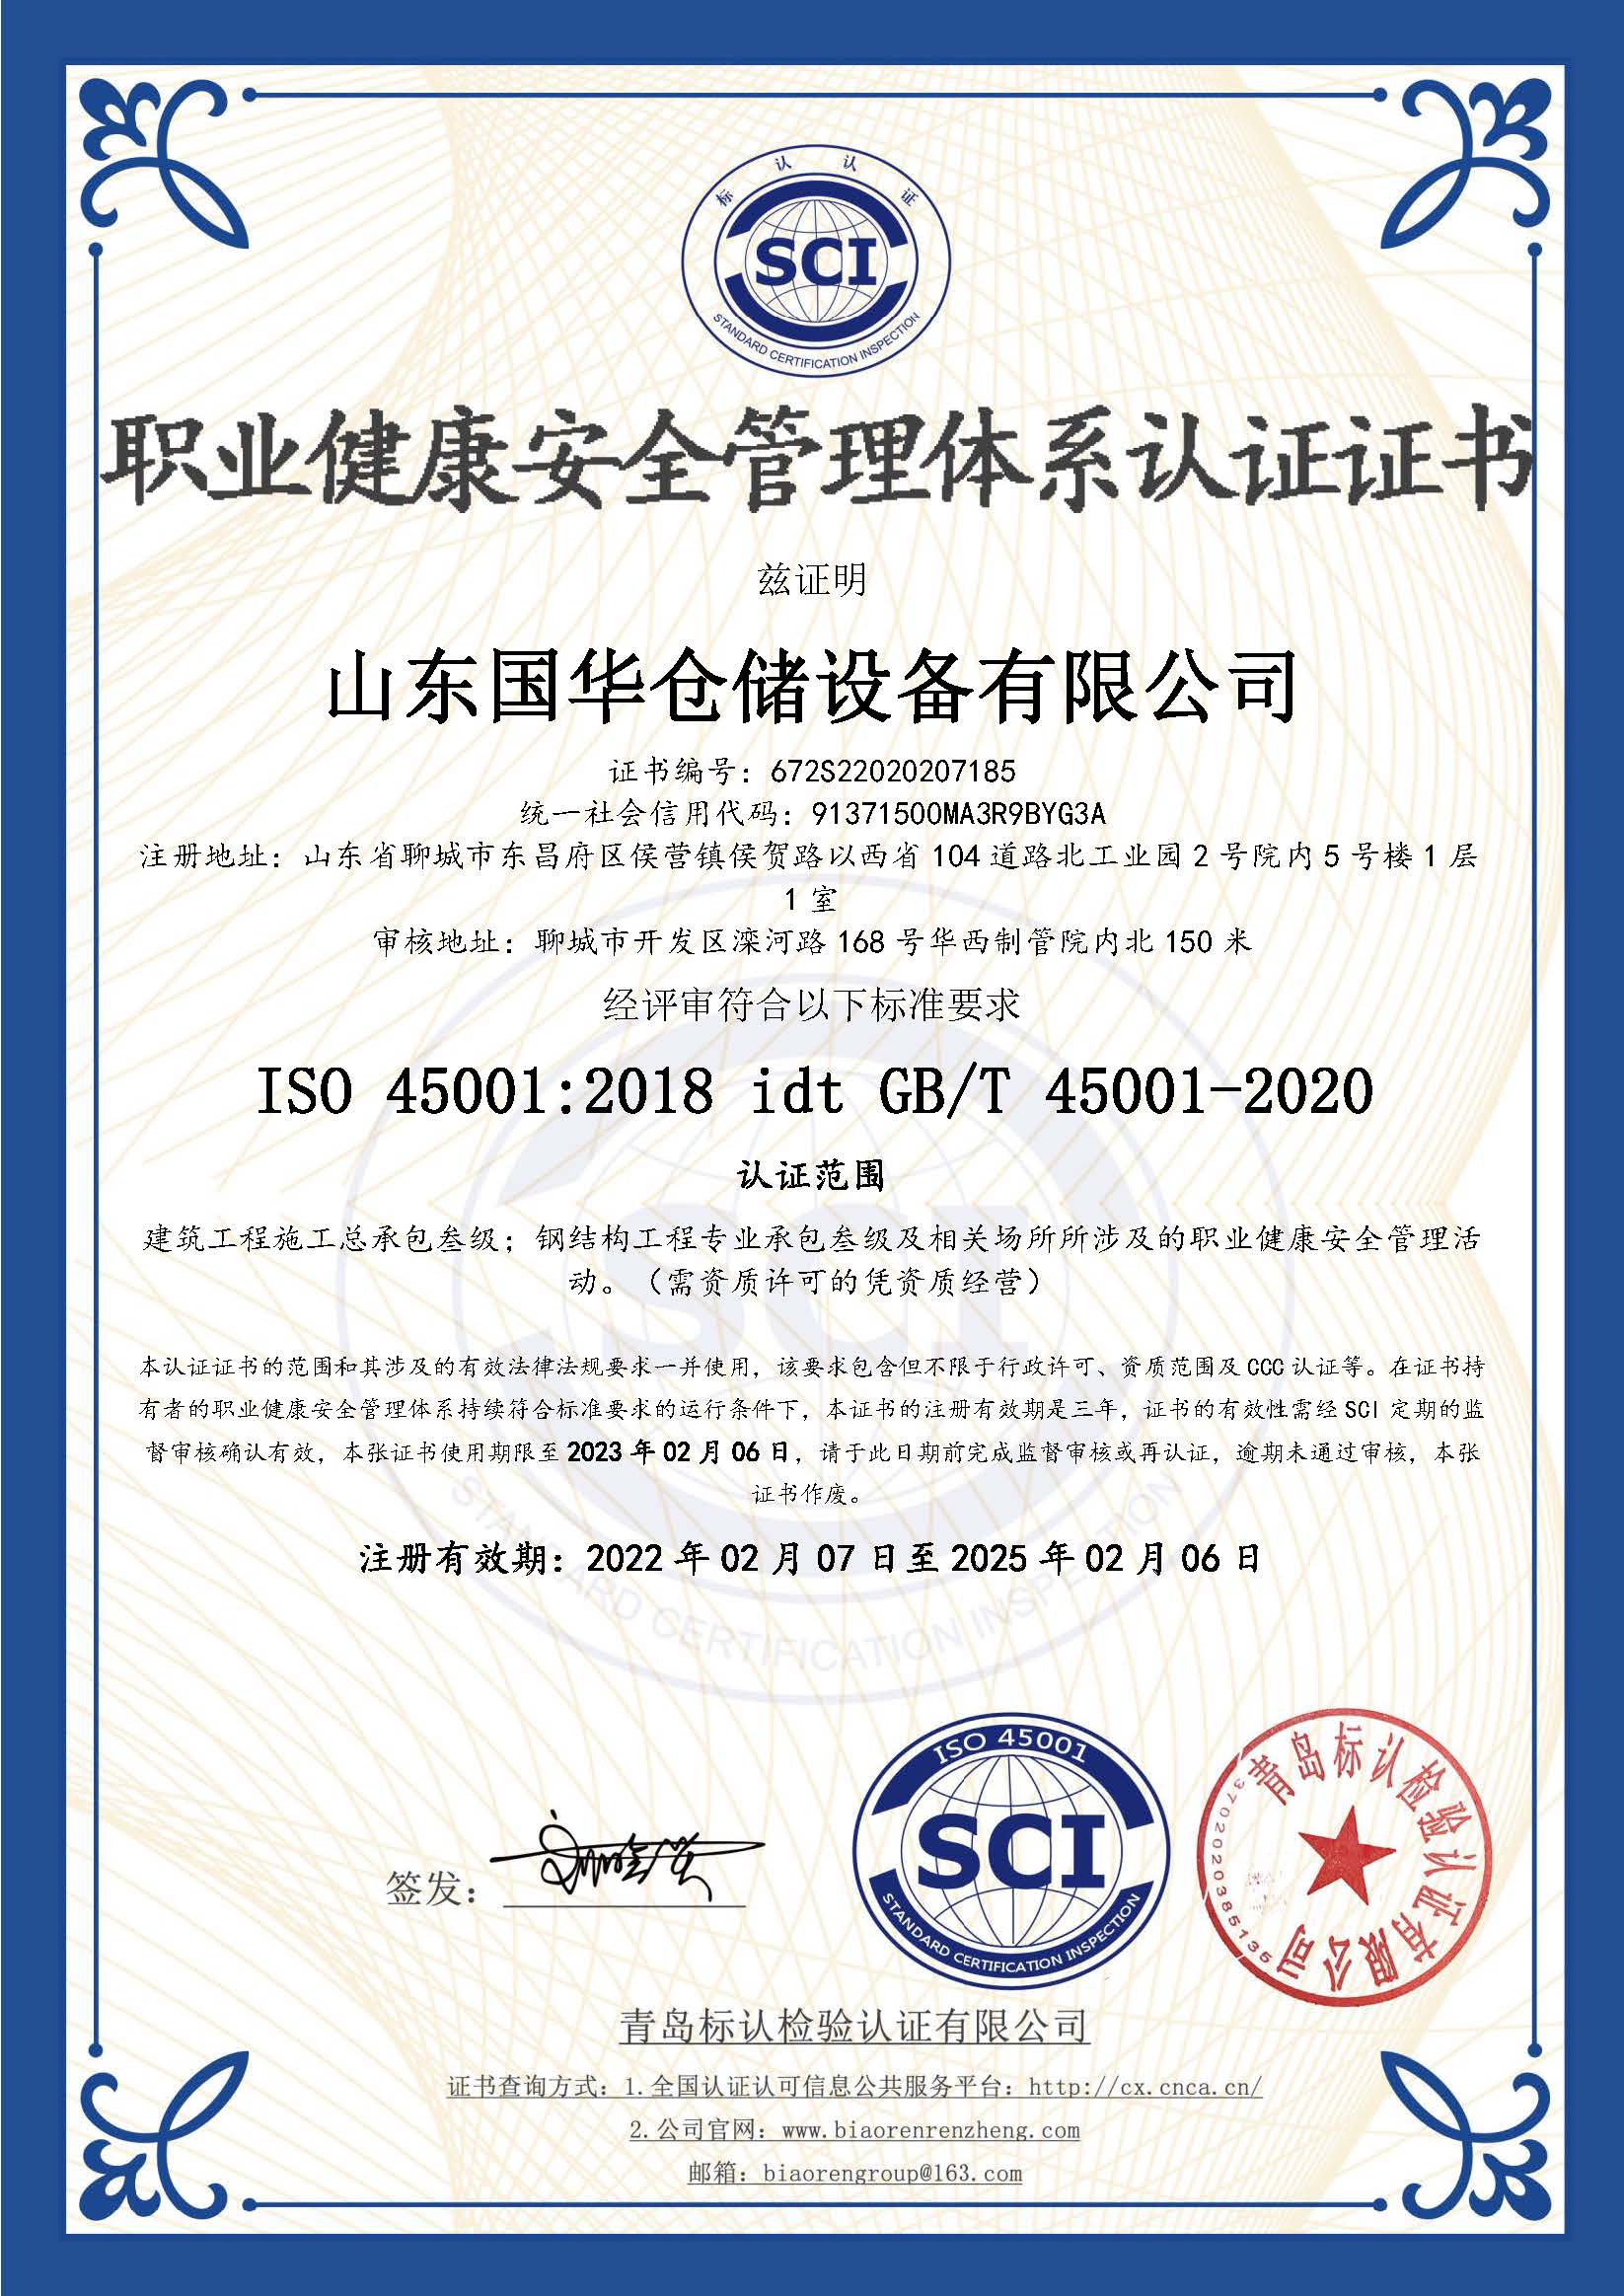 赤峰钢板仓职业健康安全管理体系认证证书